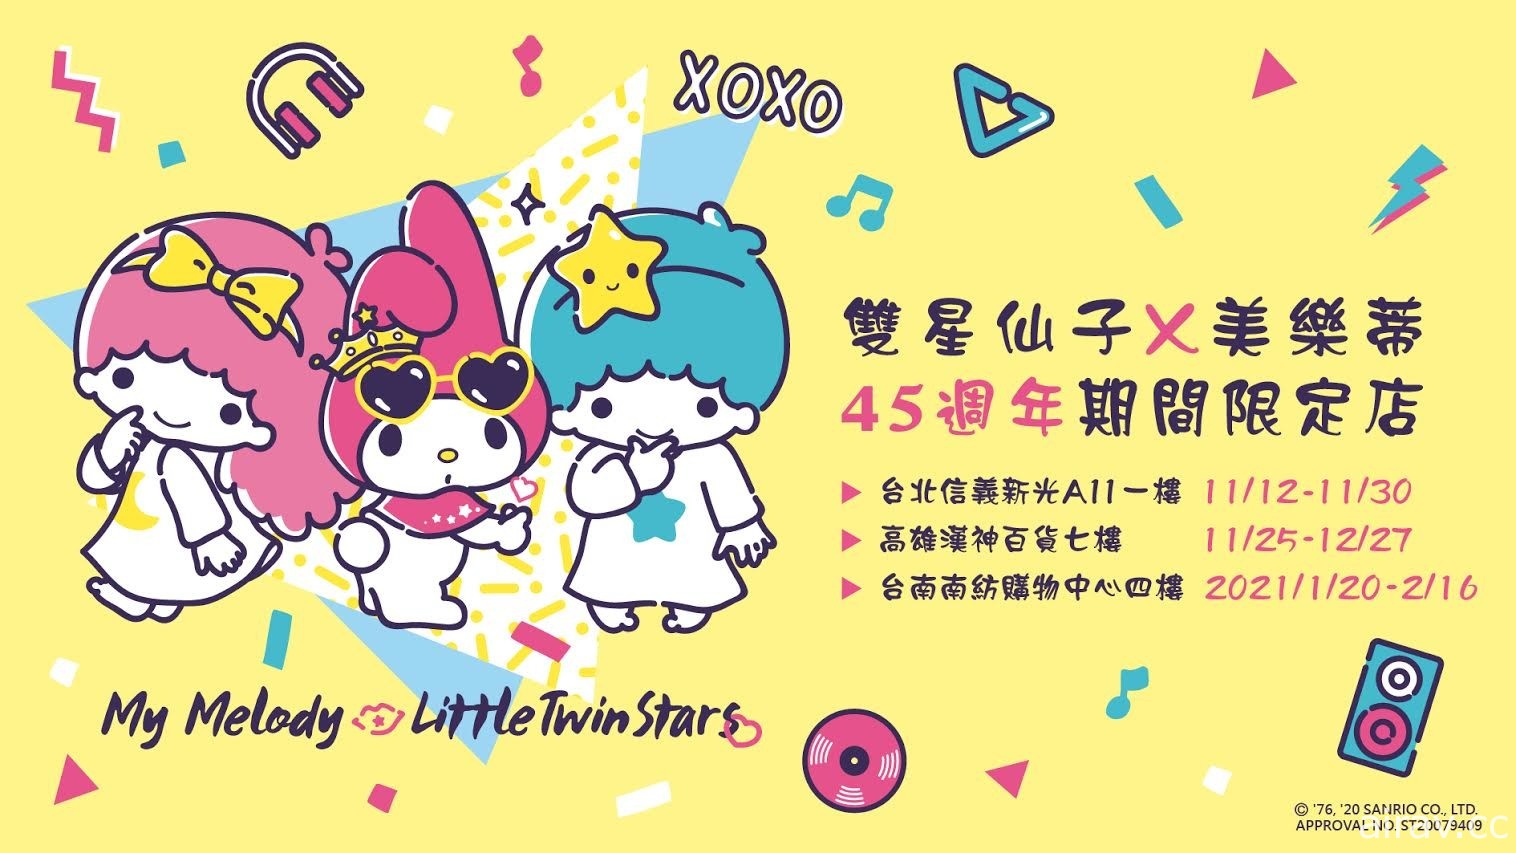 双星仙子×美乐蒂 45 周年生日派对期间限定店 11 月 12 日起北高南巡回庆生